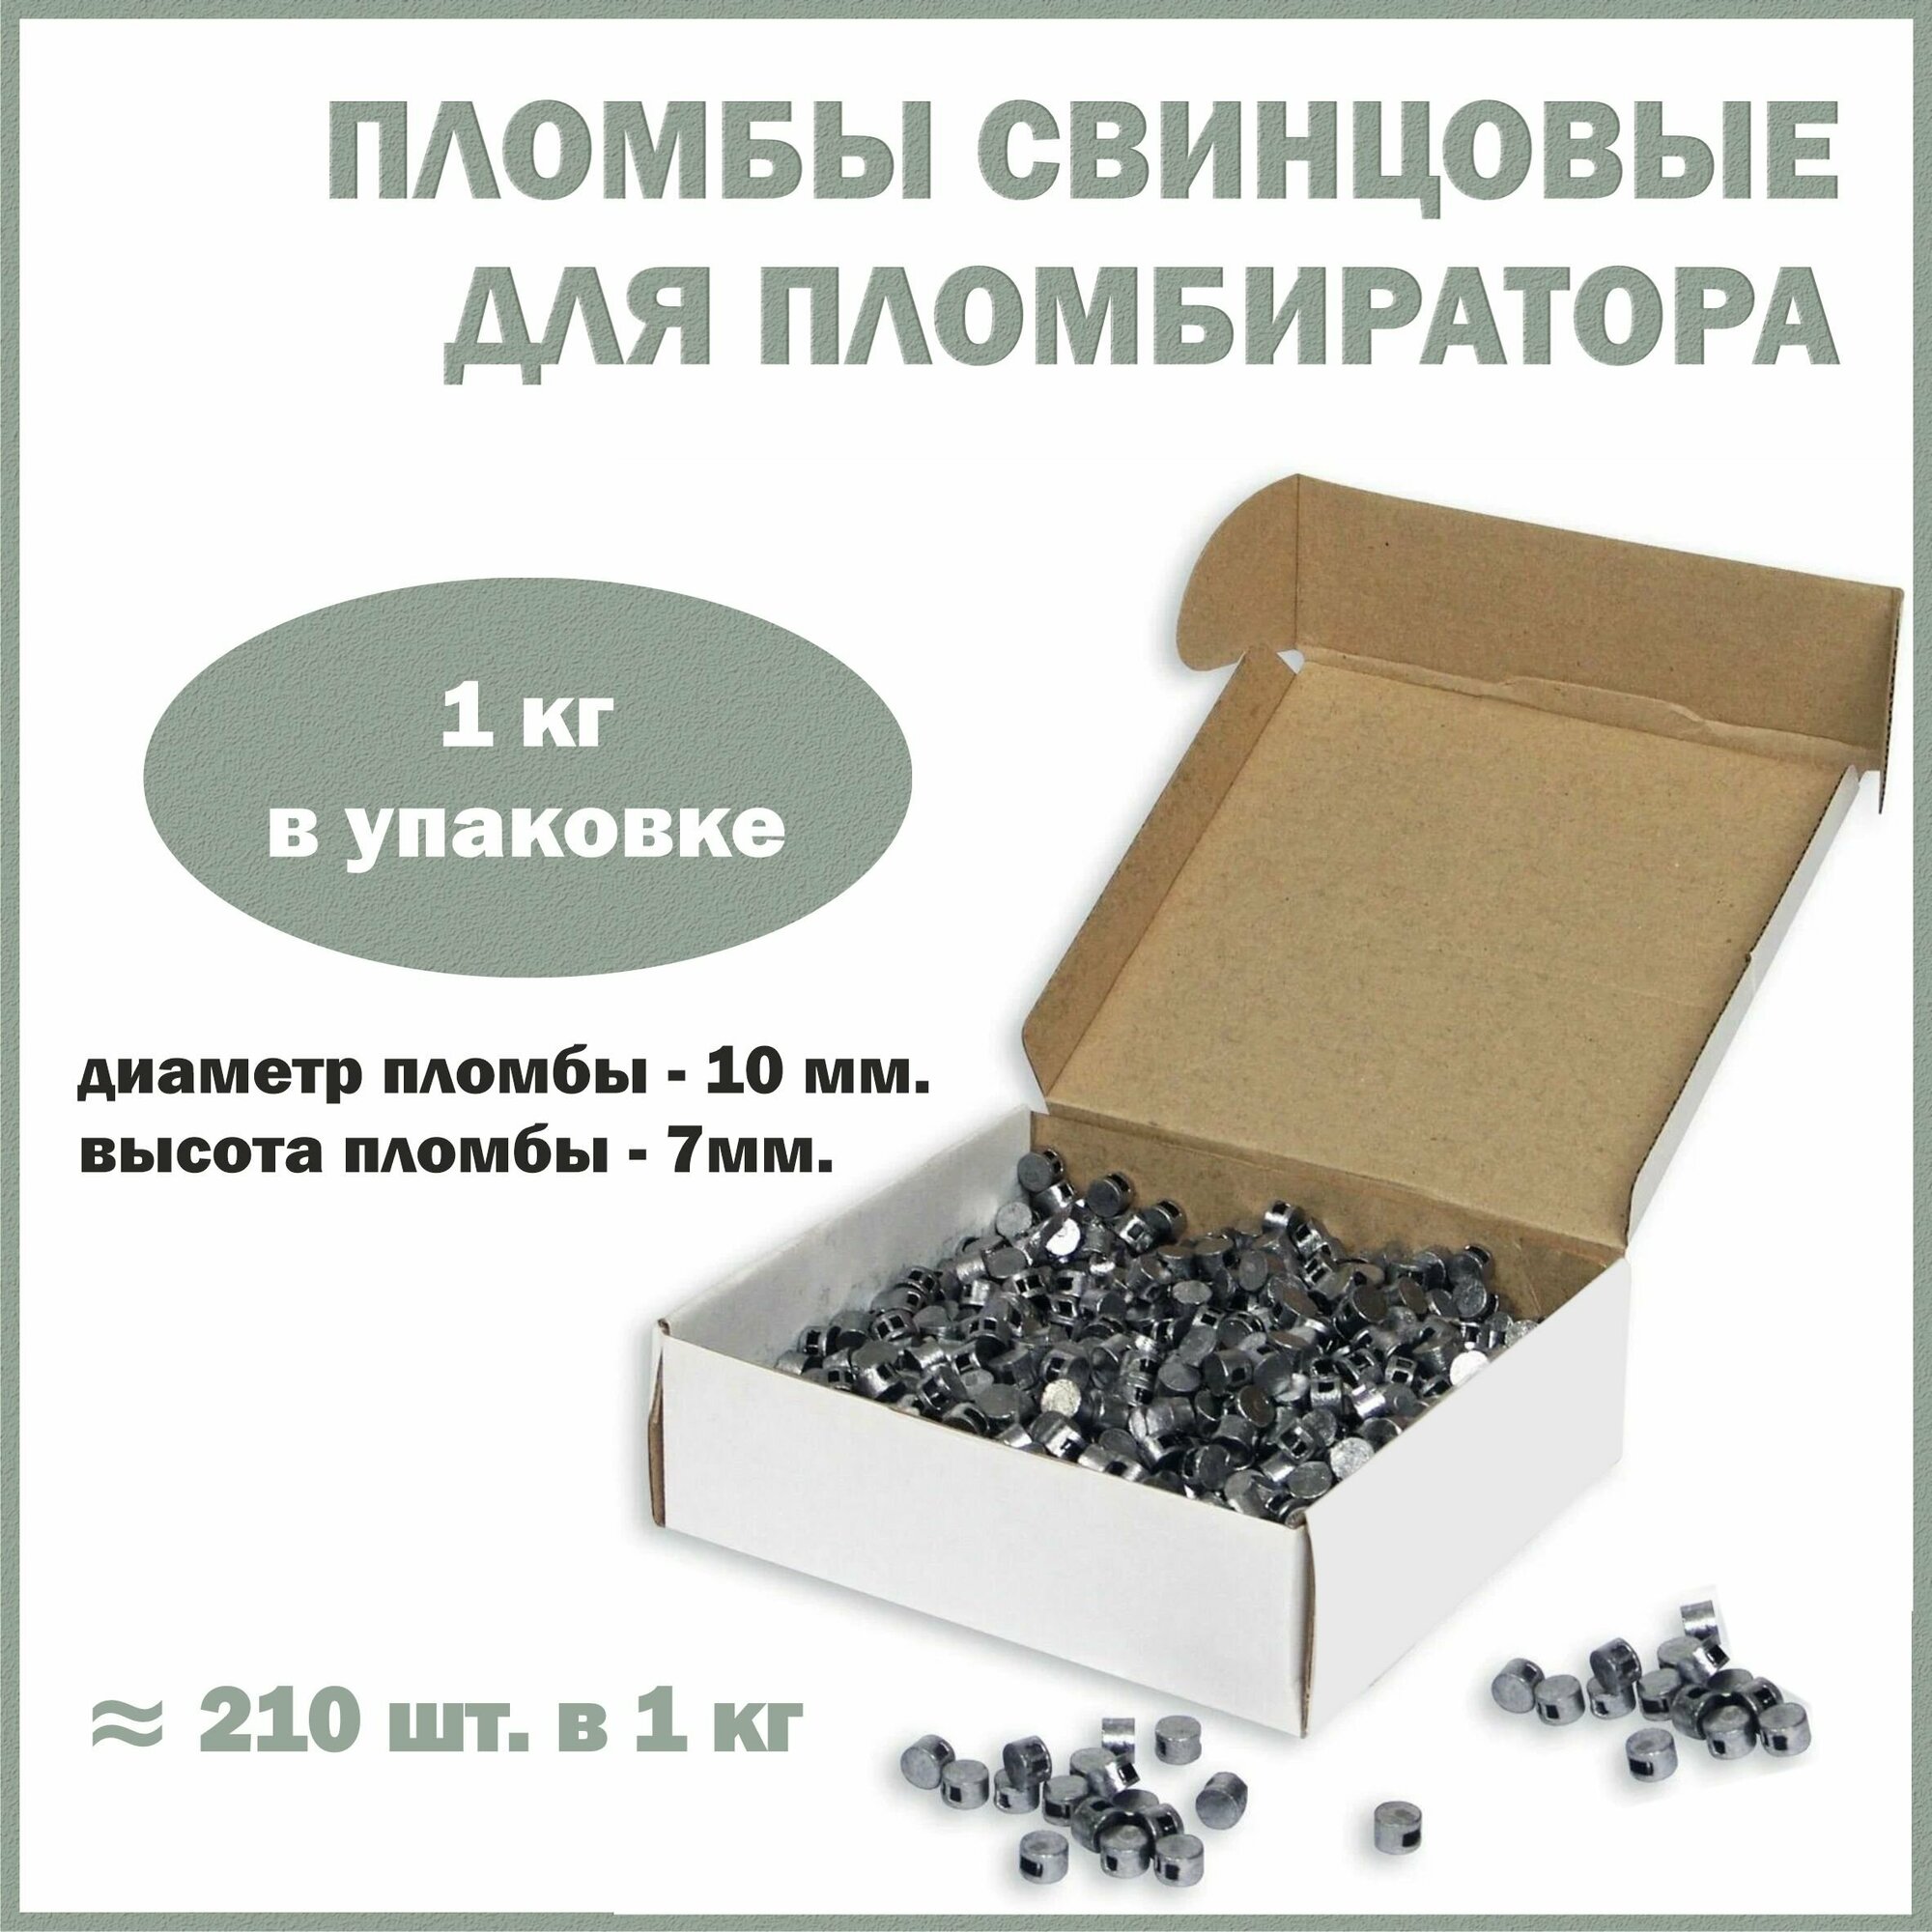 Пломбы свинцовые для опломбировки счетчиков обжимные, диаметр 10 мм, высота 7 мм, упаковка 1 кг